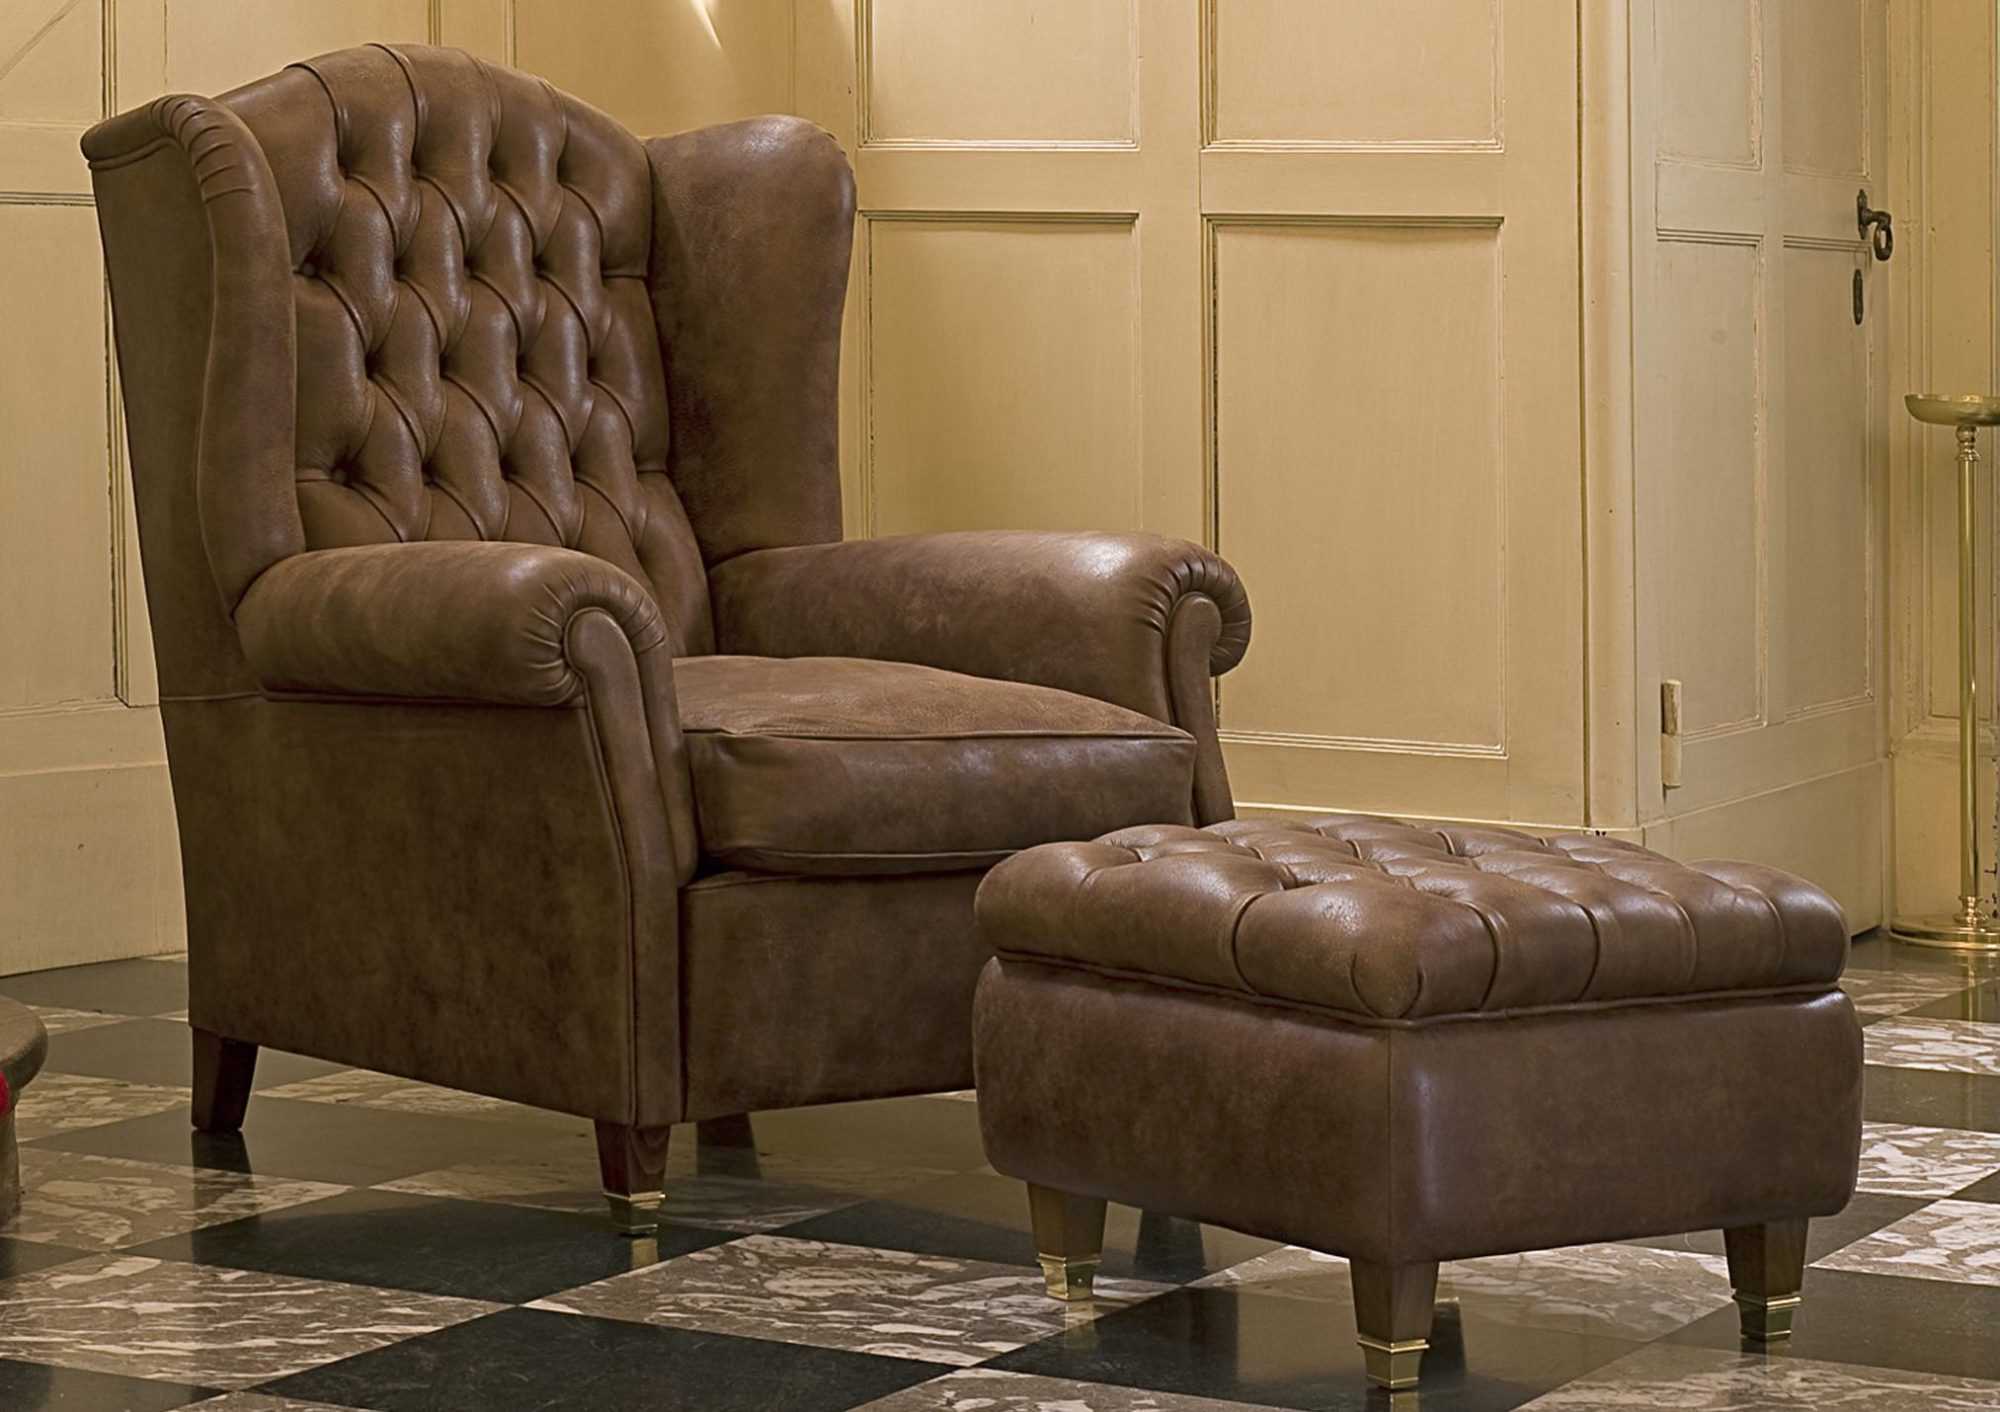 Английские каминные кресла в комбинации с различными стилями интерьера